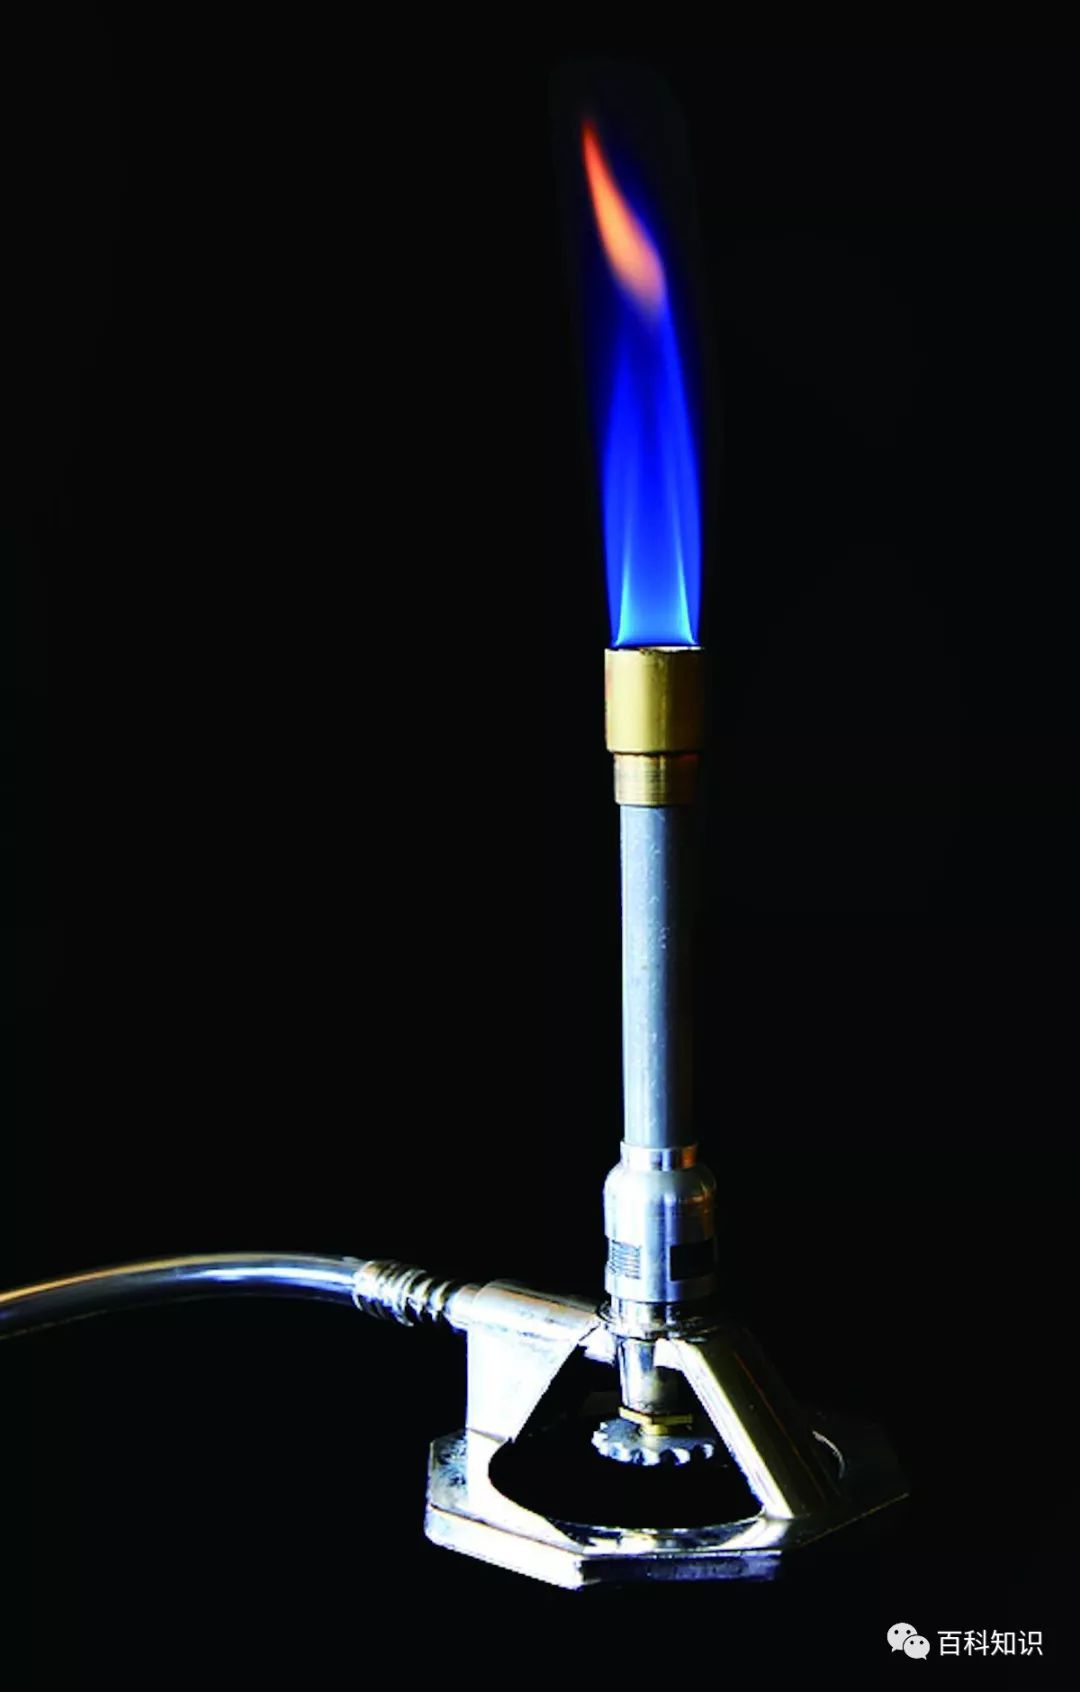 不高的煤气灯,本生灯预先将煤气和空气按比例充分混合并完全燃烧